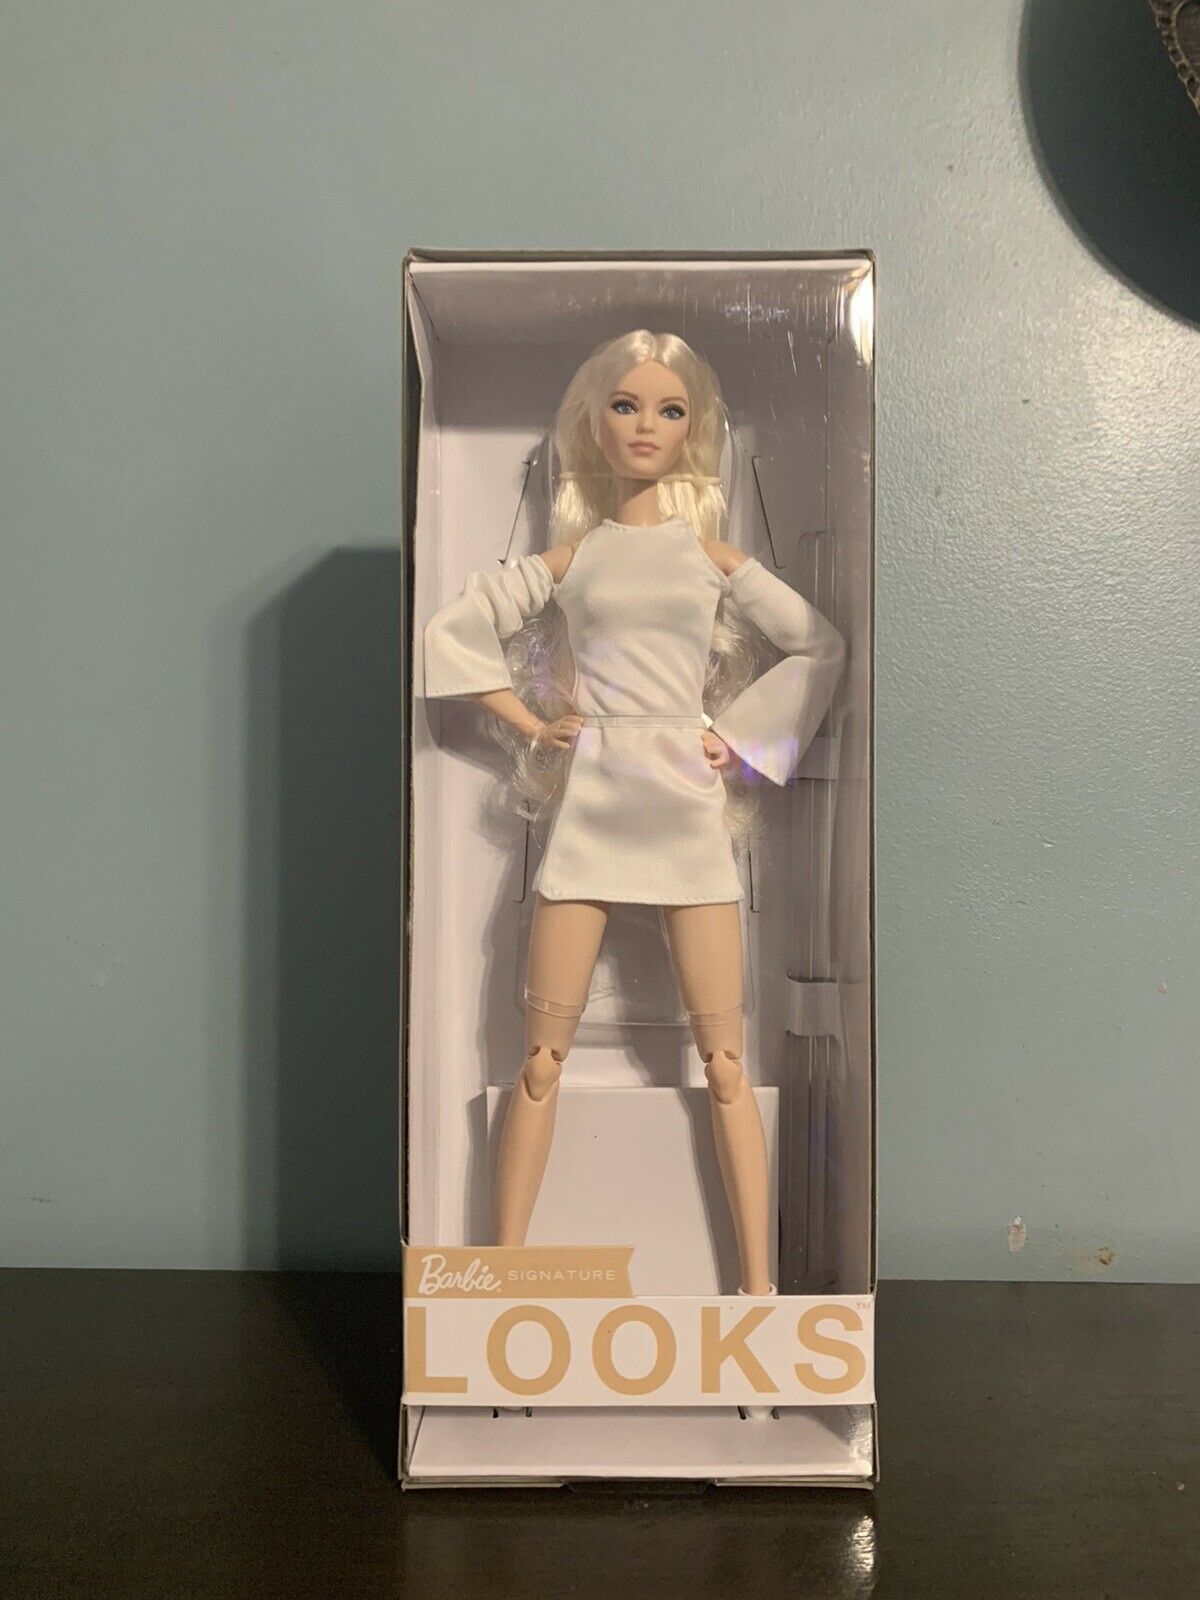 NIB 2021 Barbie Signature Looks Doll - Blonde Posable MODEL #6